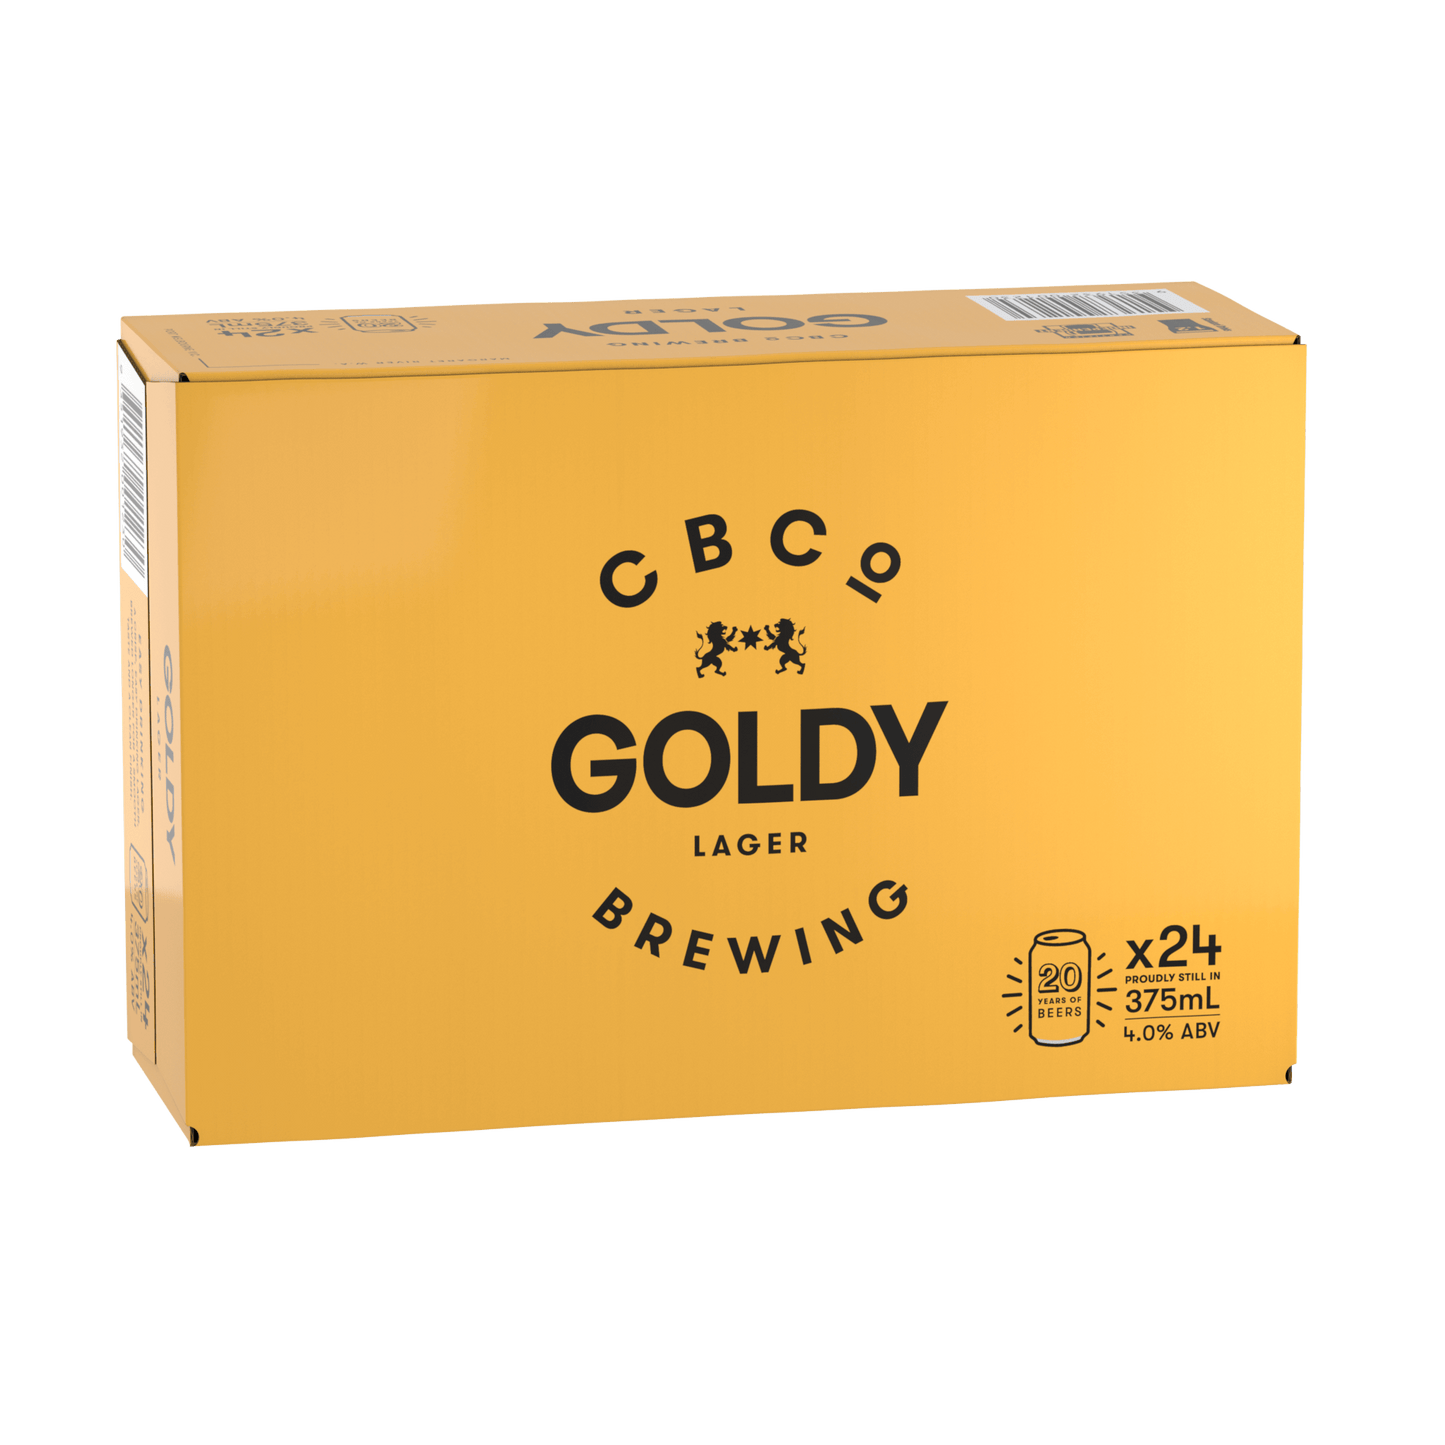 Goldy Lager